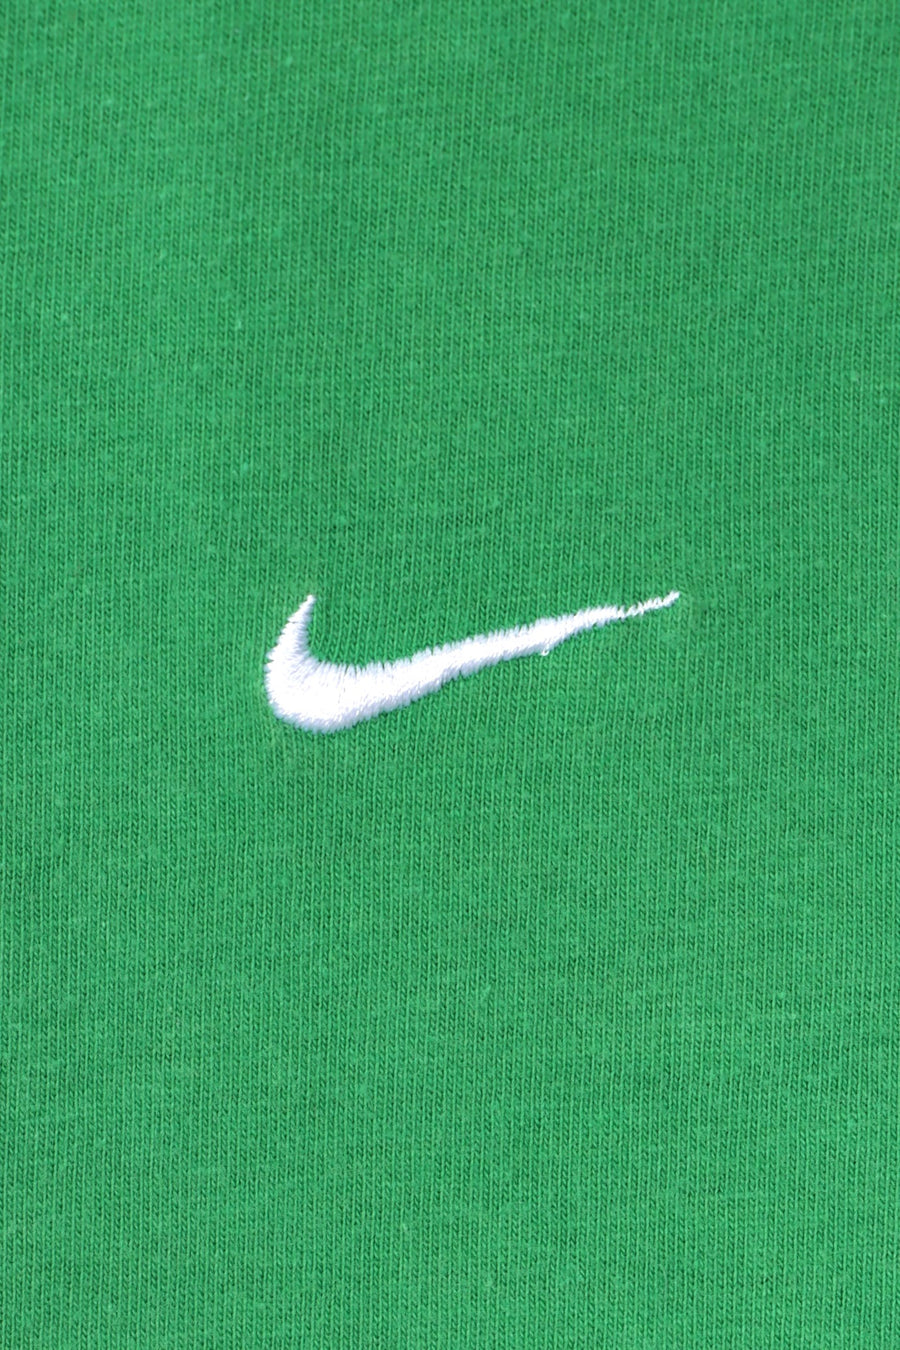 NIKE Swoosh Logo Green Casual T-Shirt (M-L)